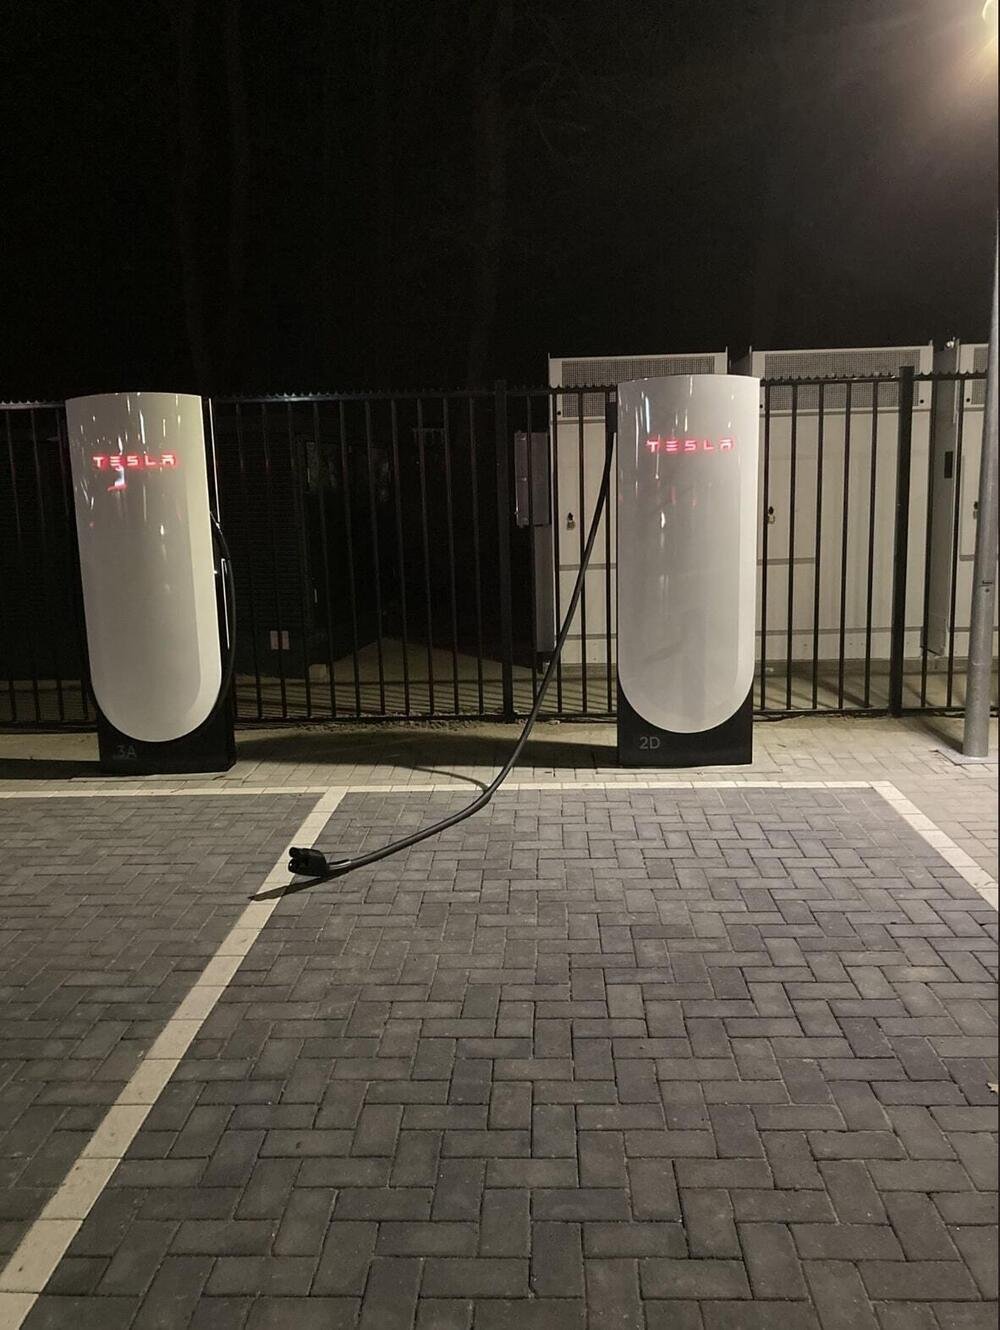 Tesla Supercharger V4